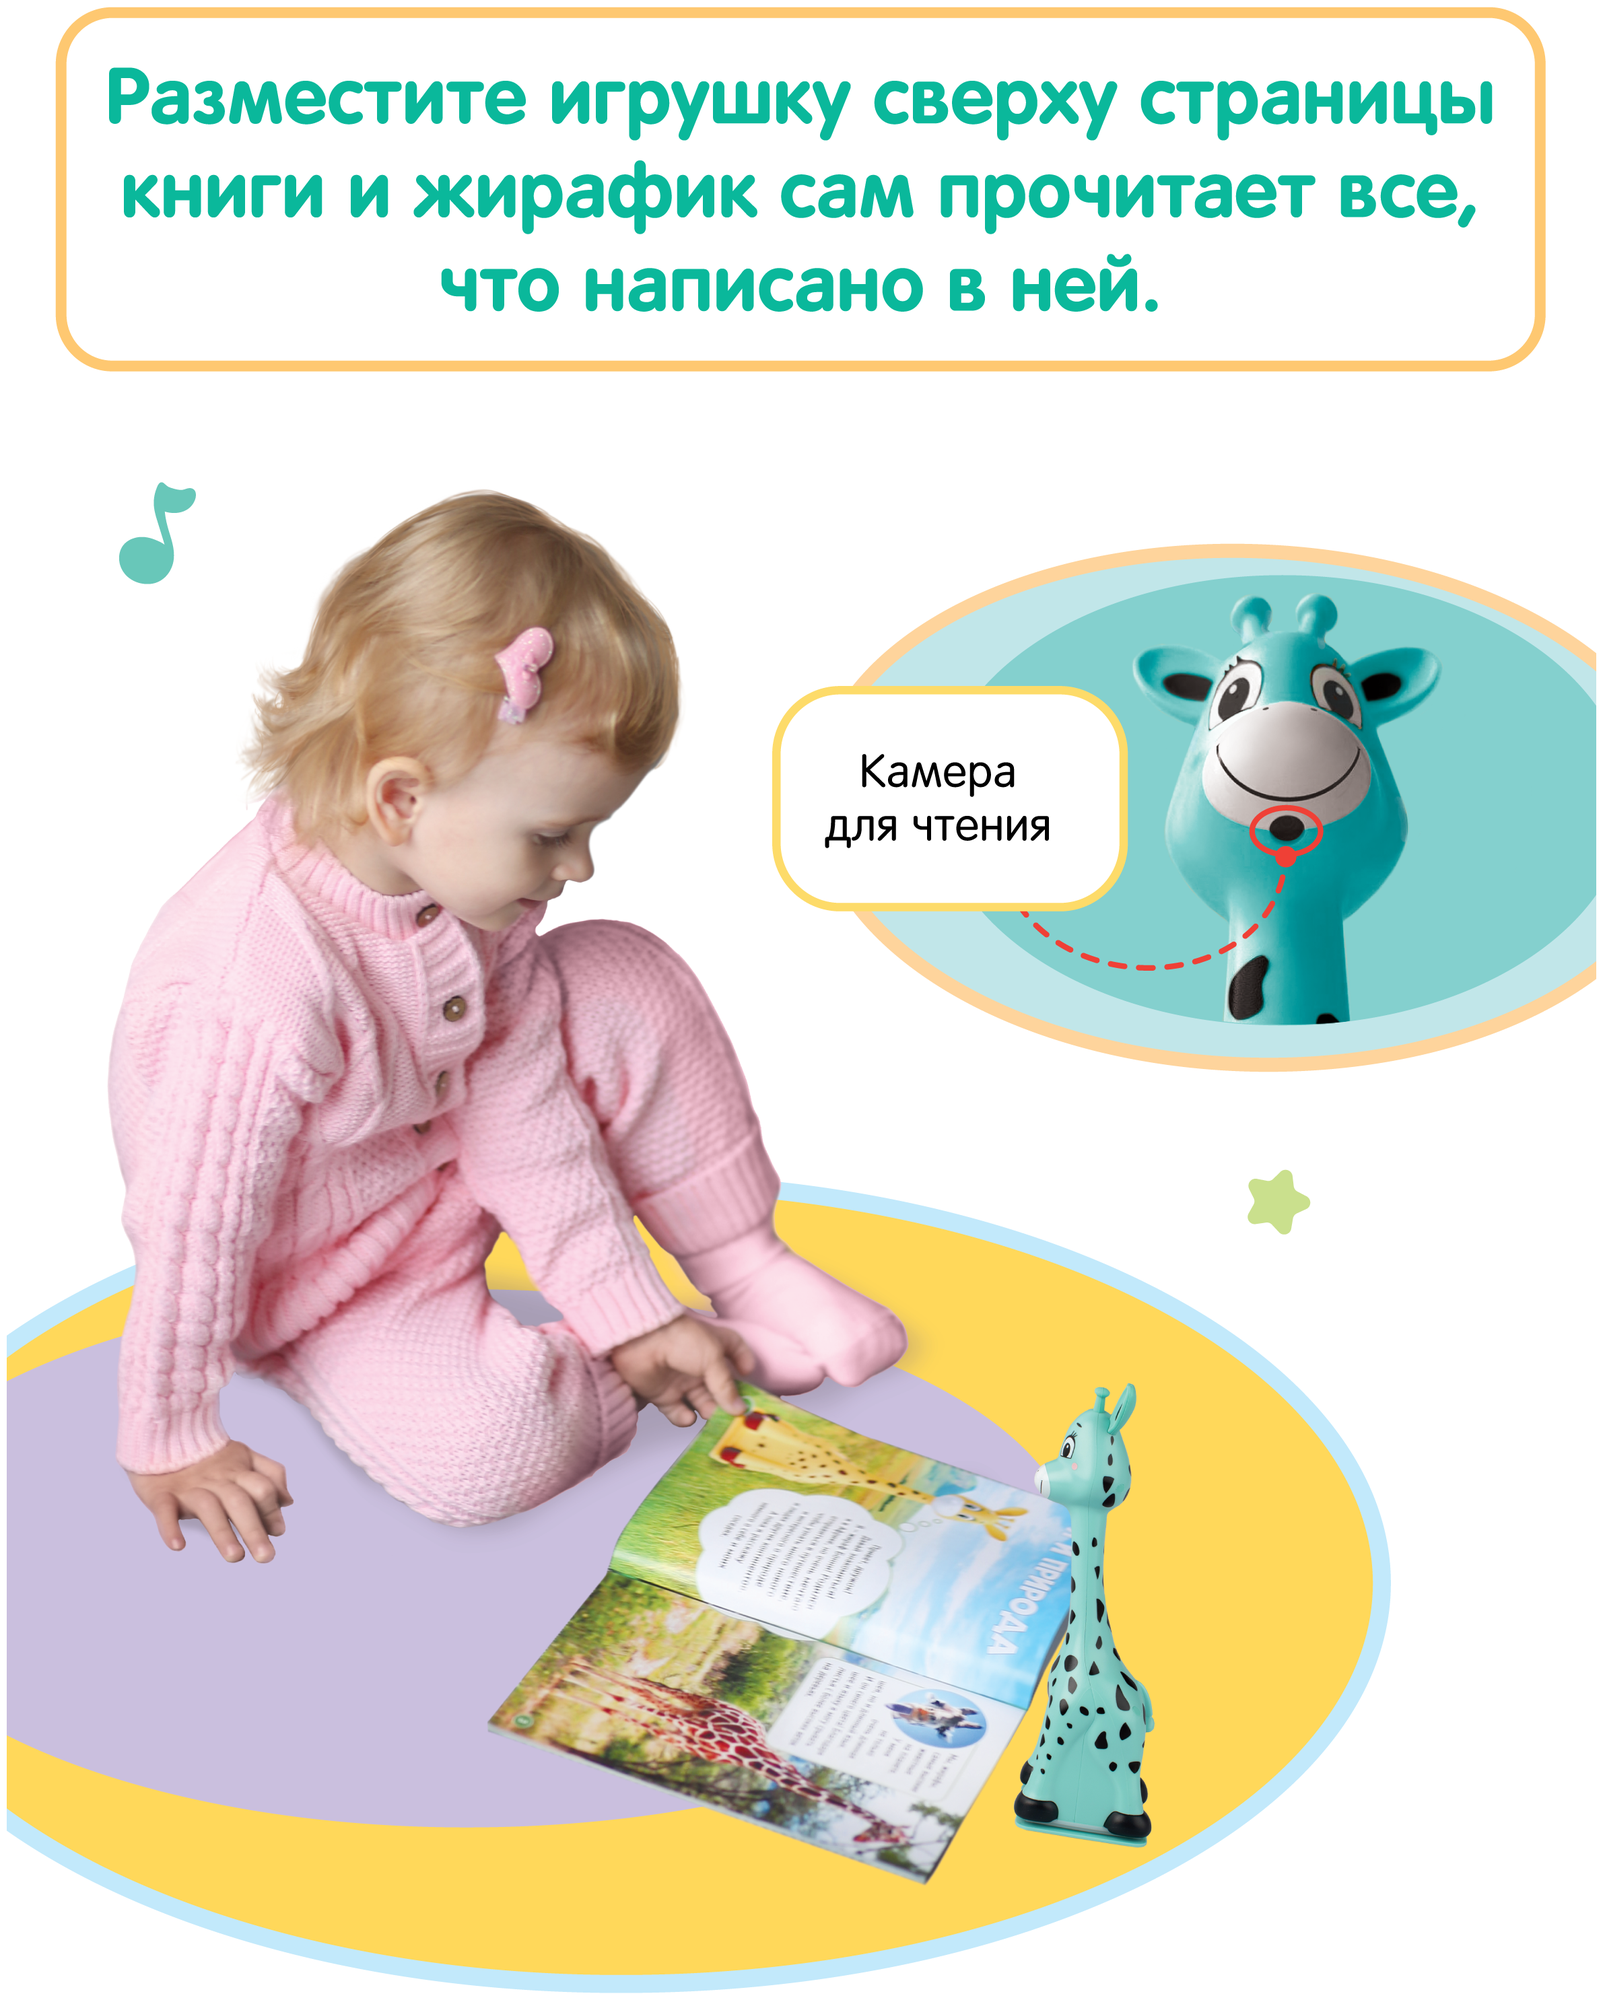 Жирафик Бонни. Музыкальная интерактивная игрушка для малышей, девочек и мальчиков. Читает книги сам! (цвета в ассорт.) Fisher Price - фото №3